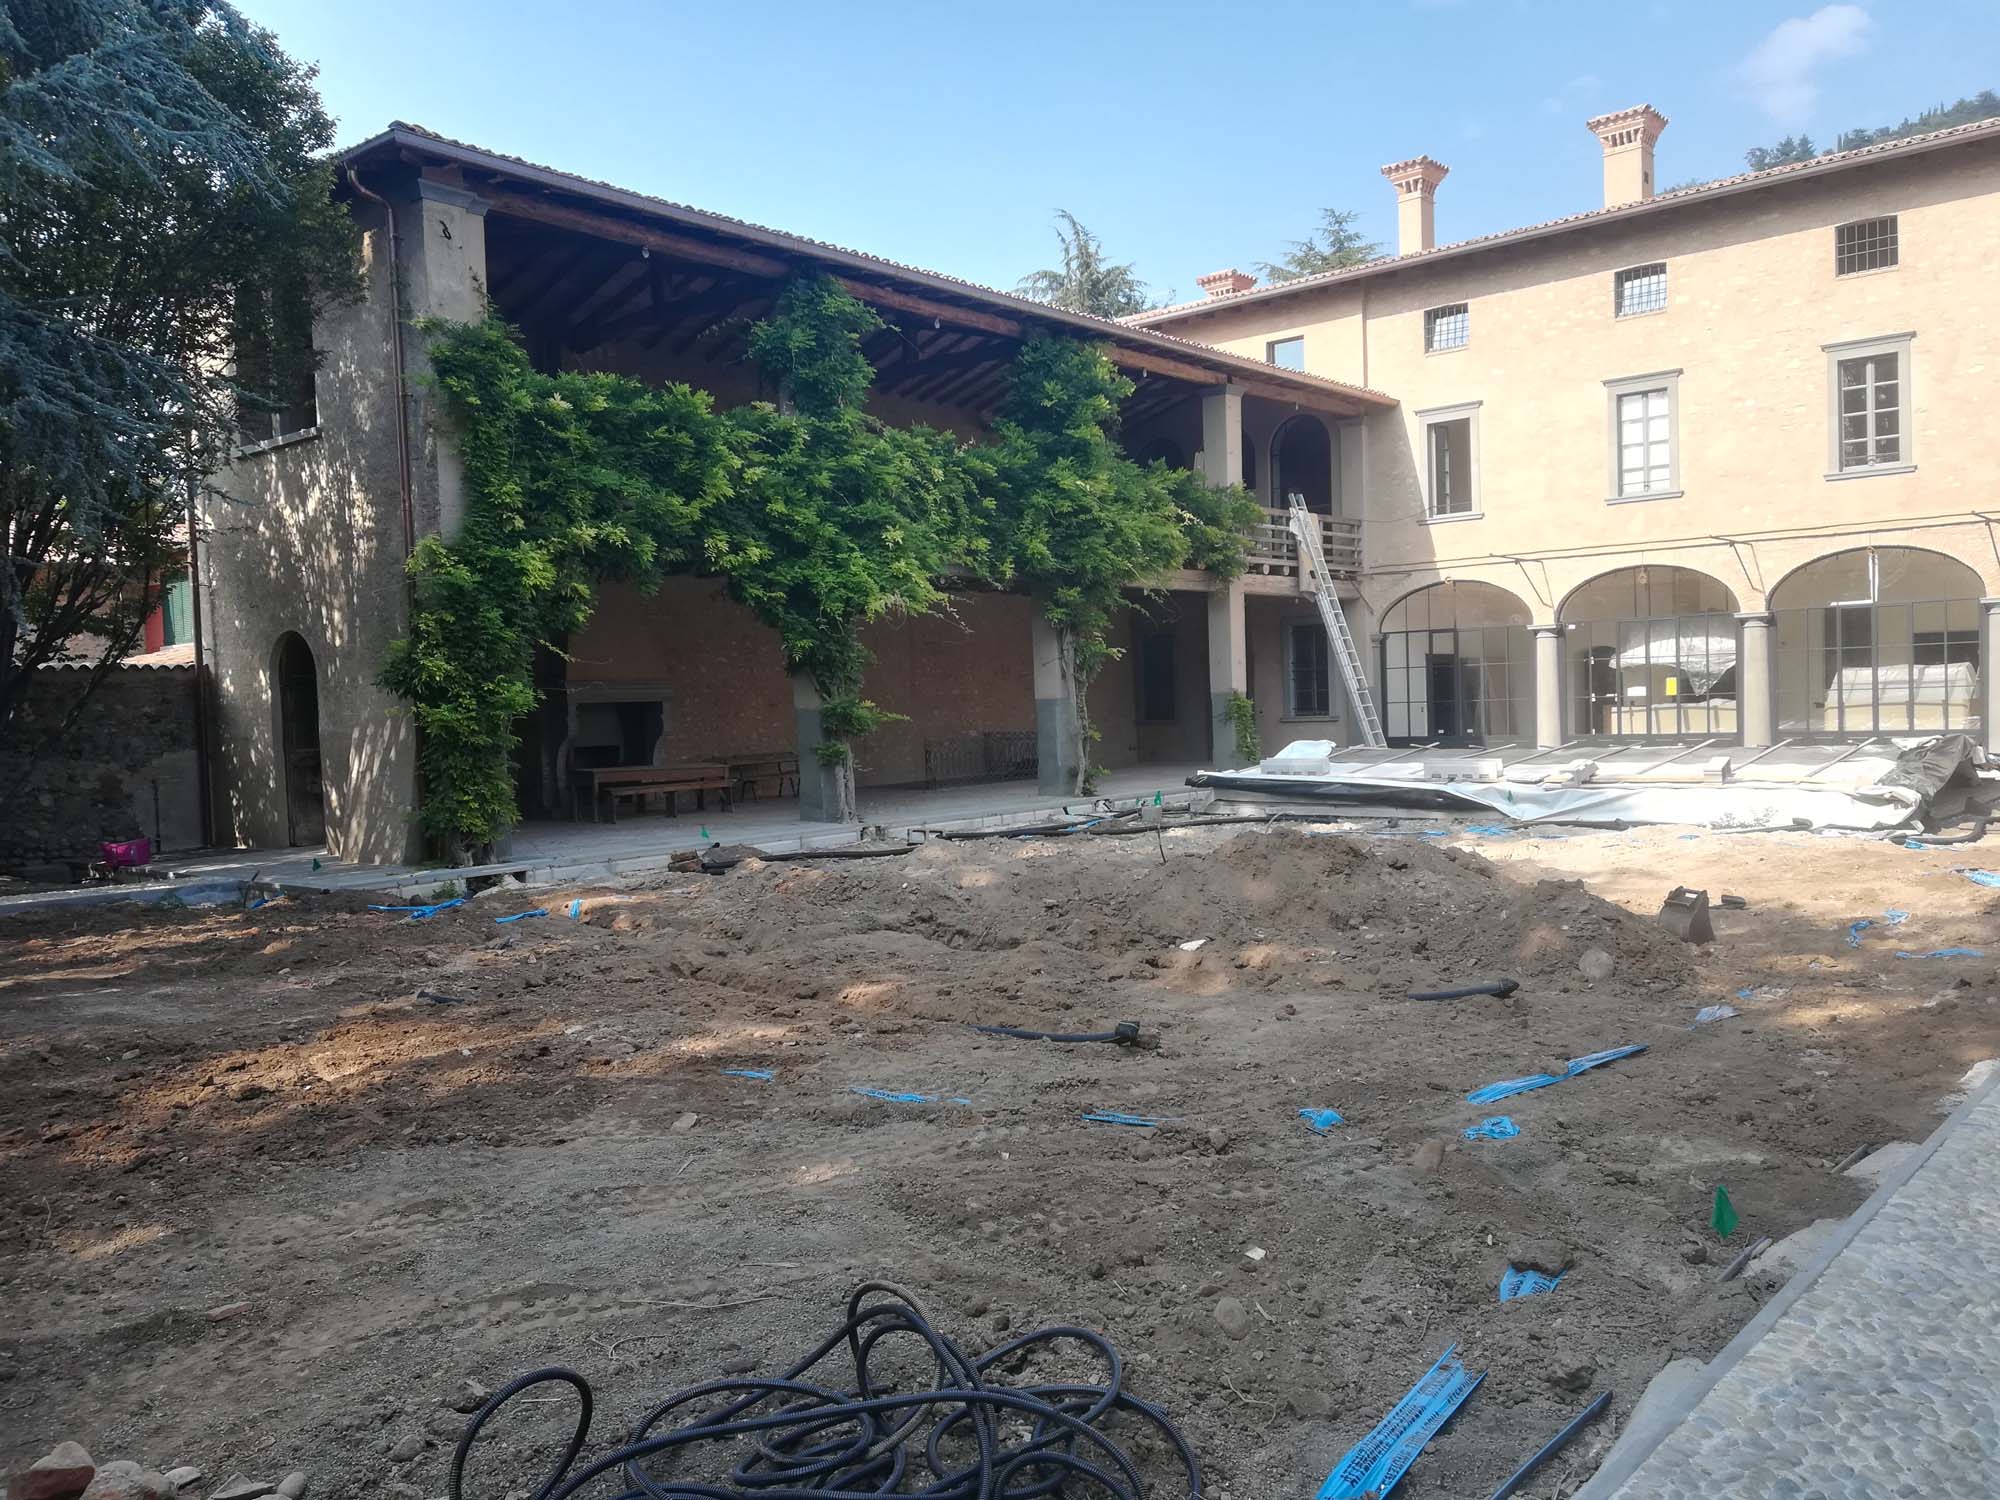 lavorazione, livellamento e sistemazione del terreno - Giardino palazzo storico in Franciacorta